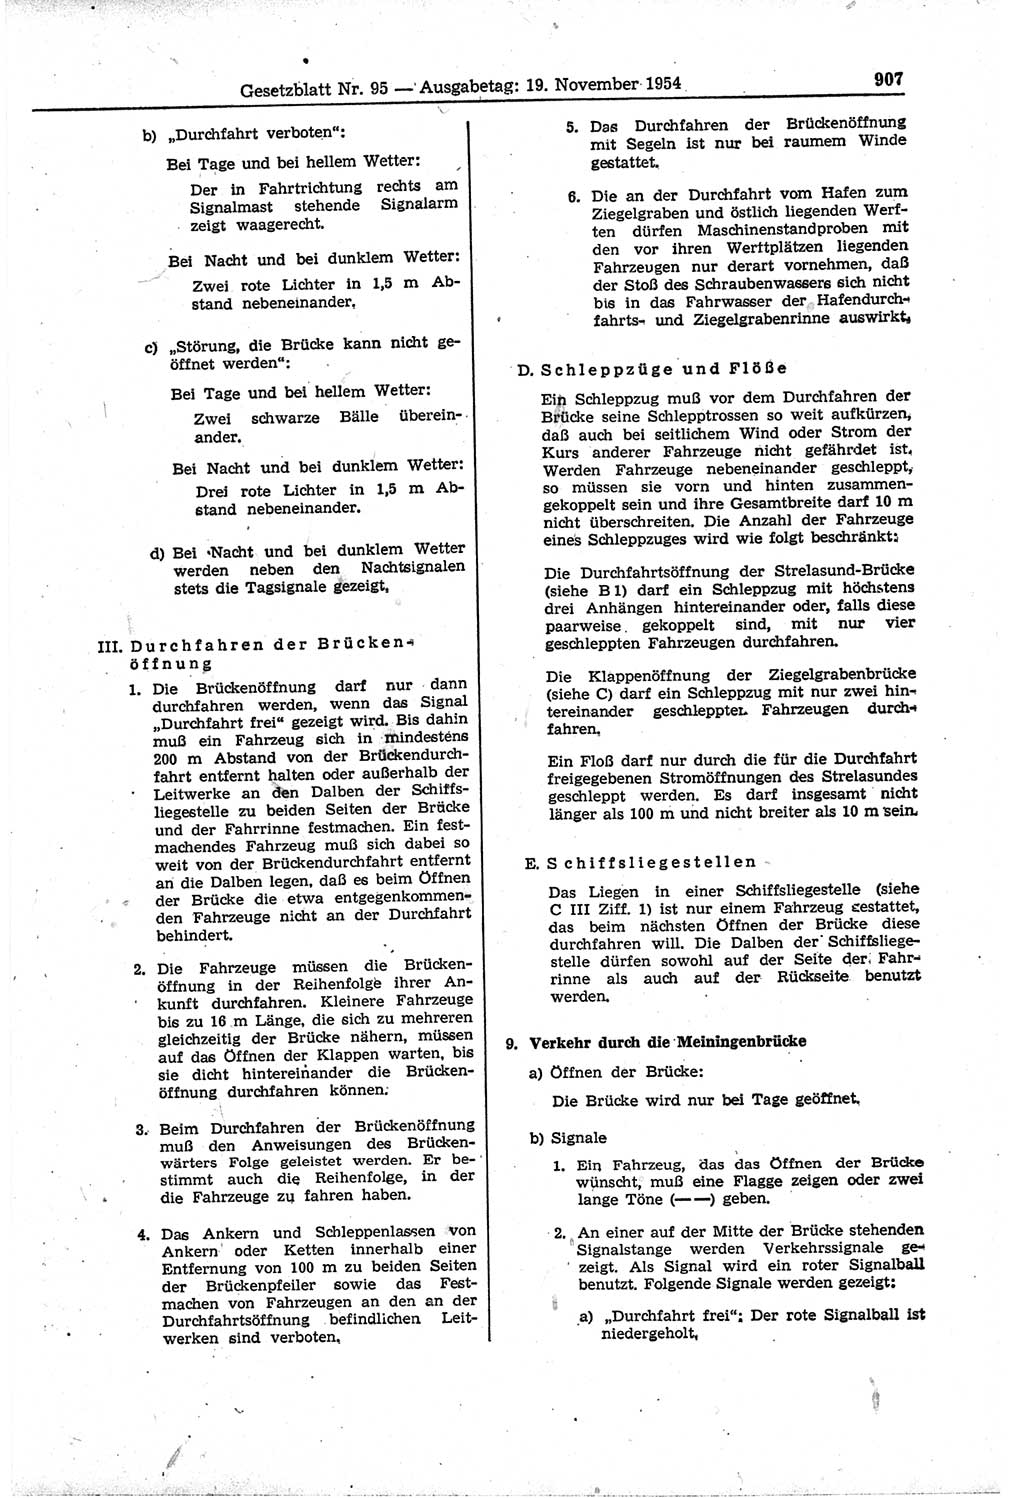 Gesetzblatt (GBl.) der Deutschen Demokratischen Republik (DDR) 1954, Seite 907 (GBl. DDR 1954, S. 907)